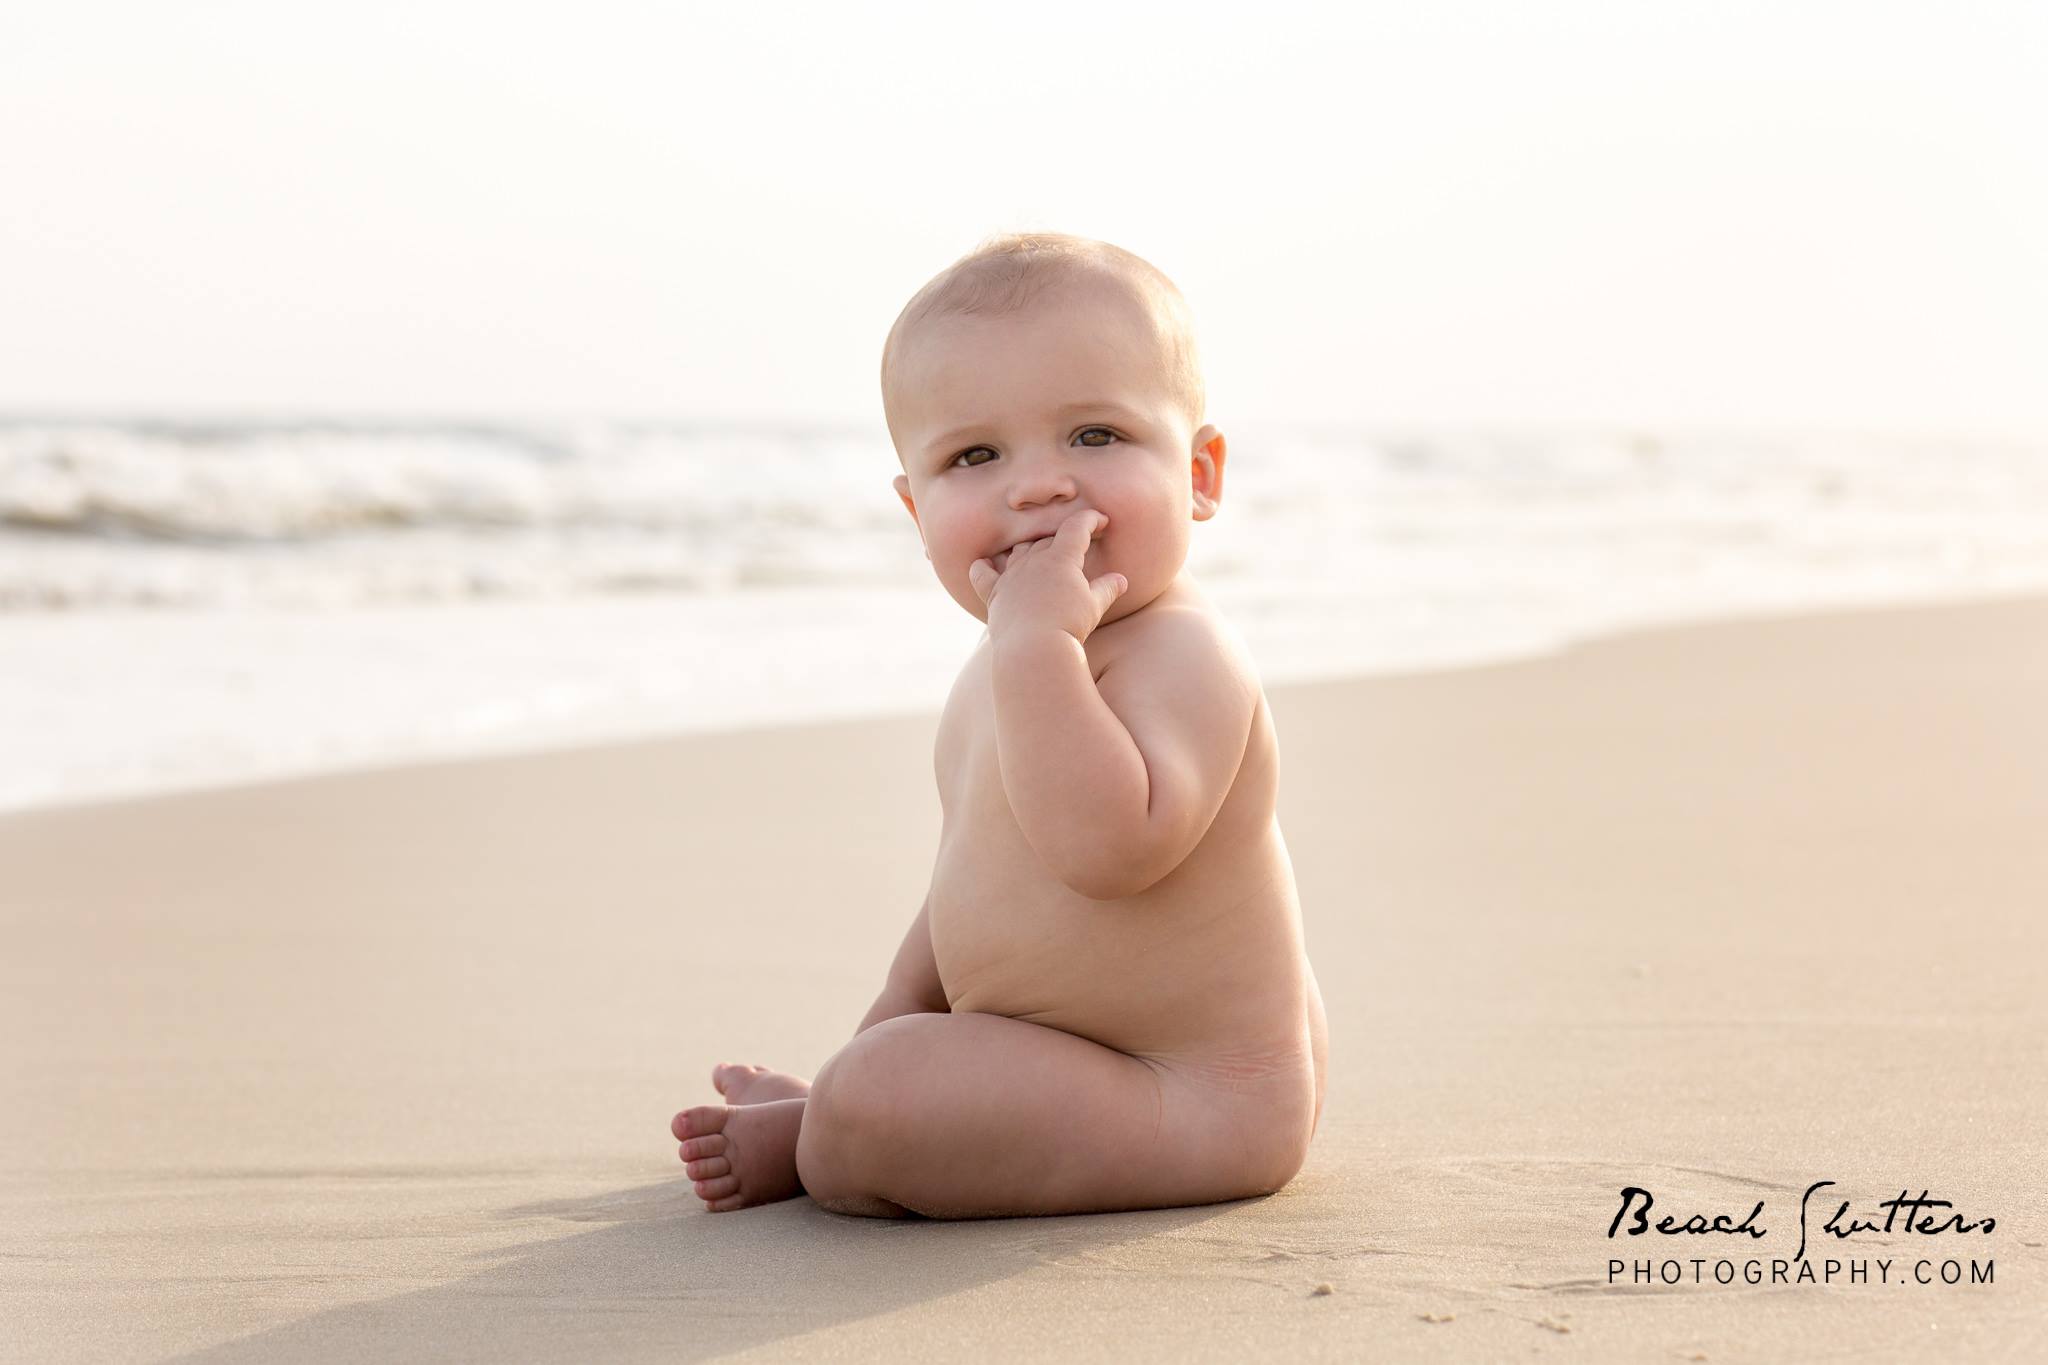 Beach Babies - Beach Shutters Photography